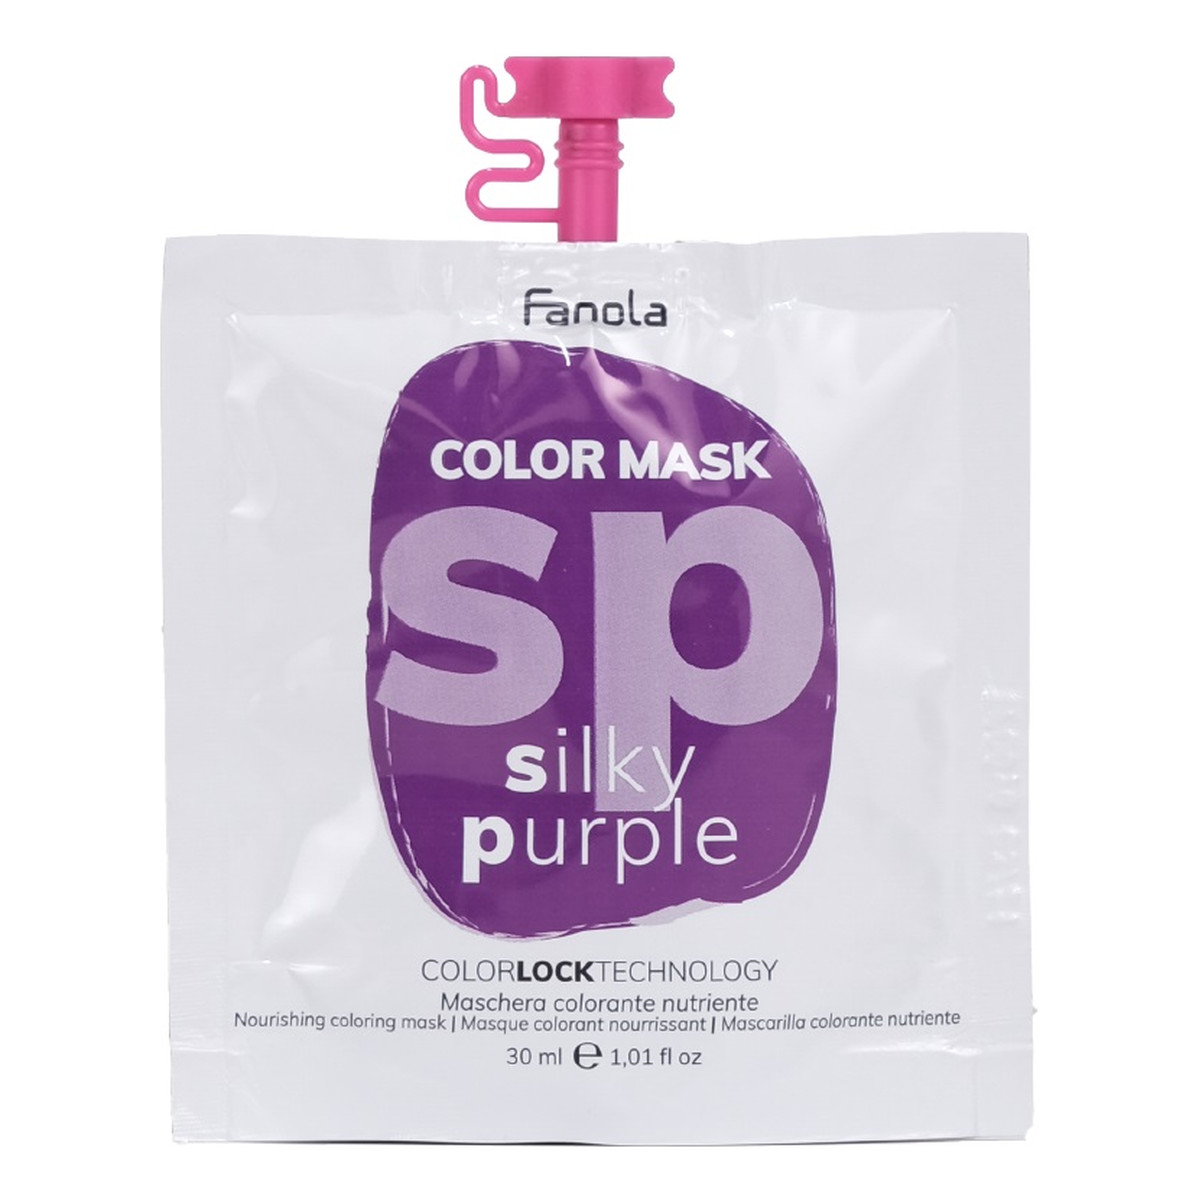 Fanola Color mask maska koloryzująca do włosów silky purple 30ml